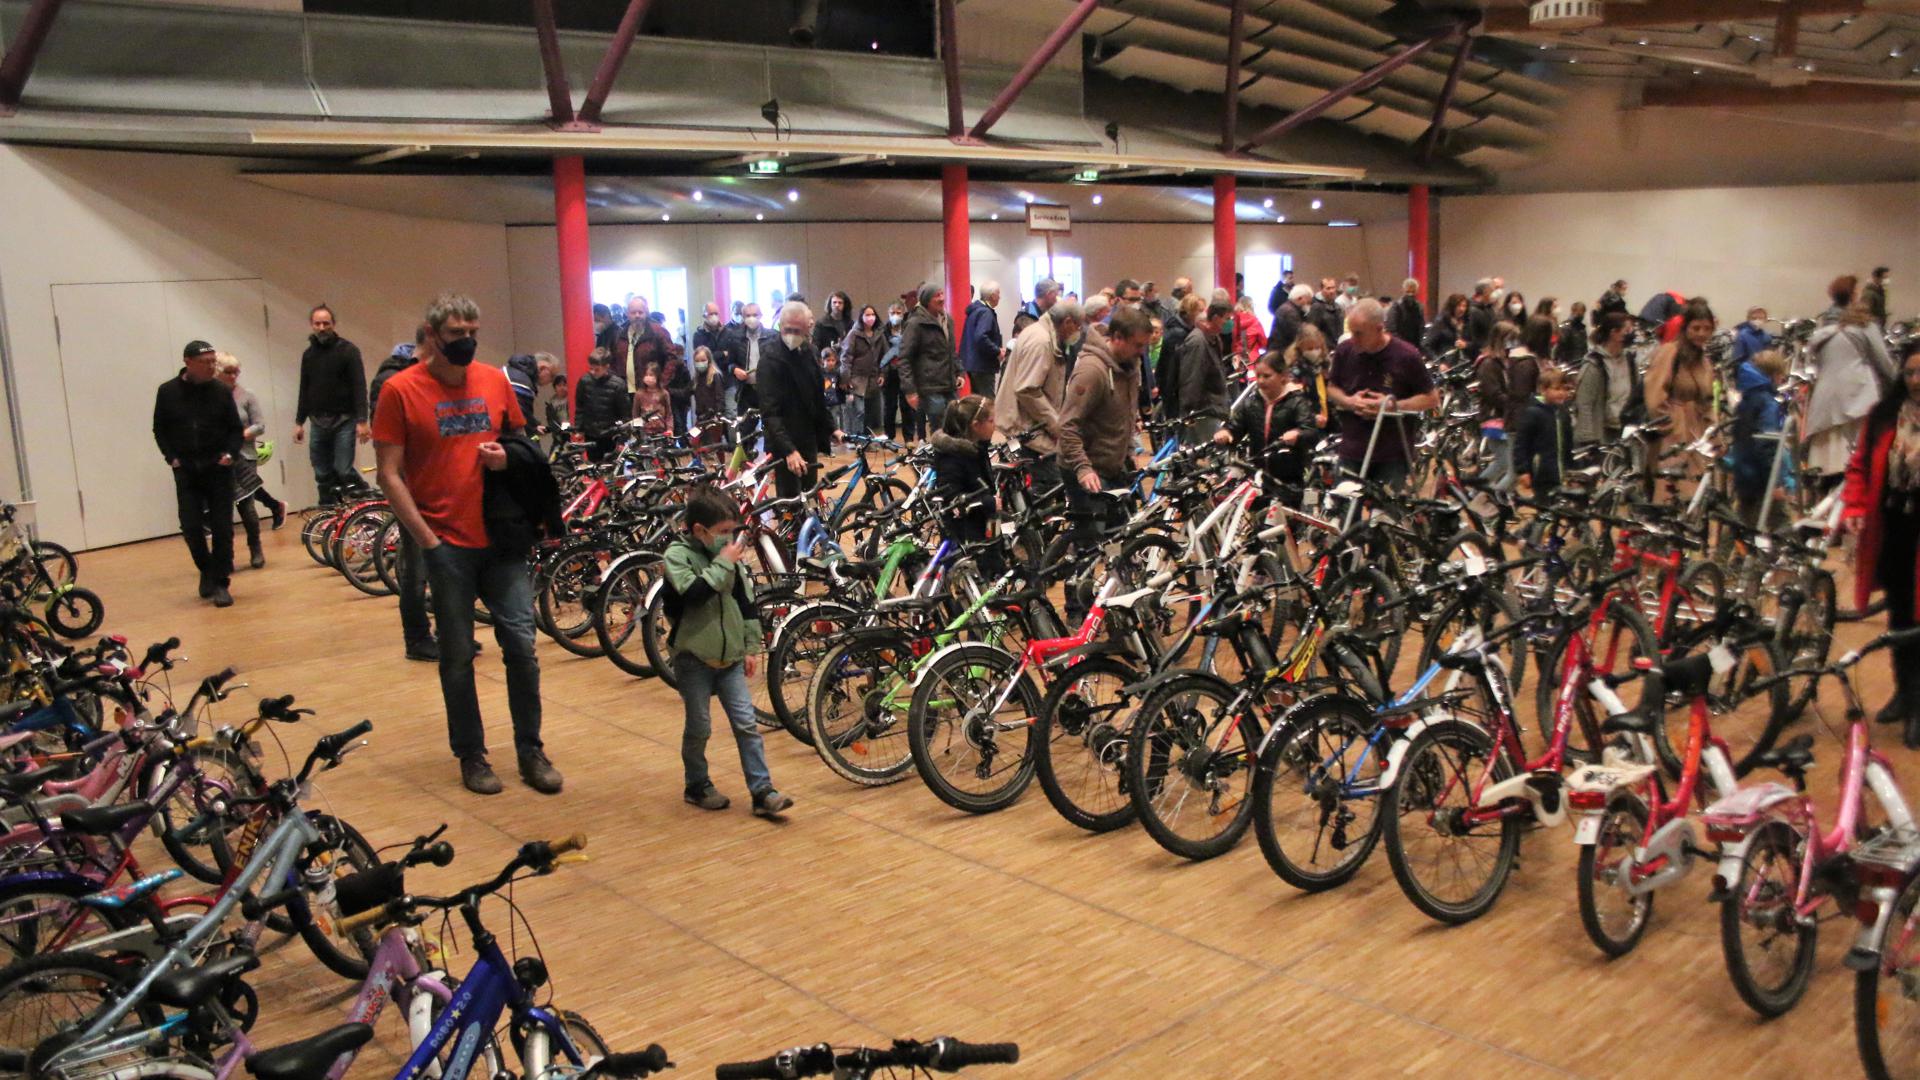 Kurz nach Hallenöffnung strömten zahlreiche Besucher auf die über 250 Fahrräder, die der Ski-Club Remchingen beim Radbasar gegen eine Kommission verkaufte. 